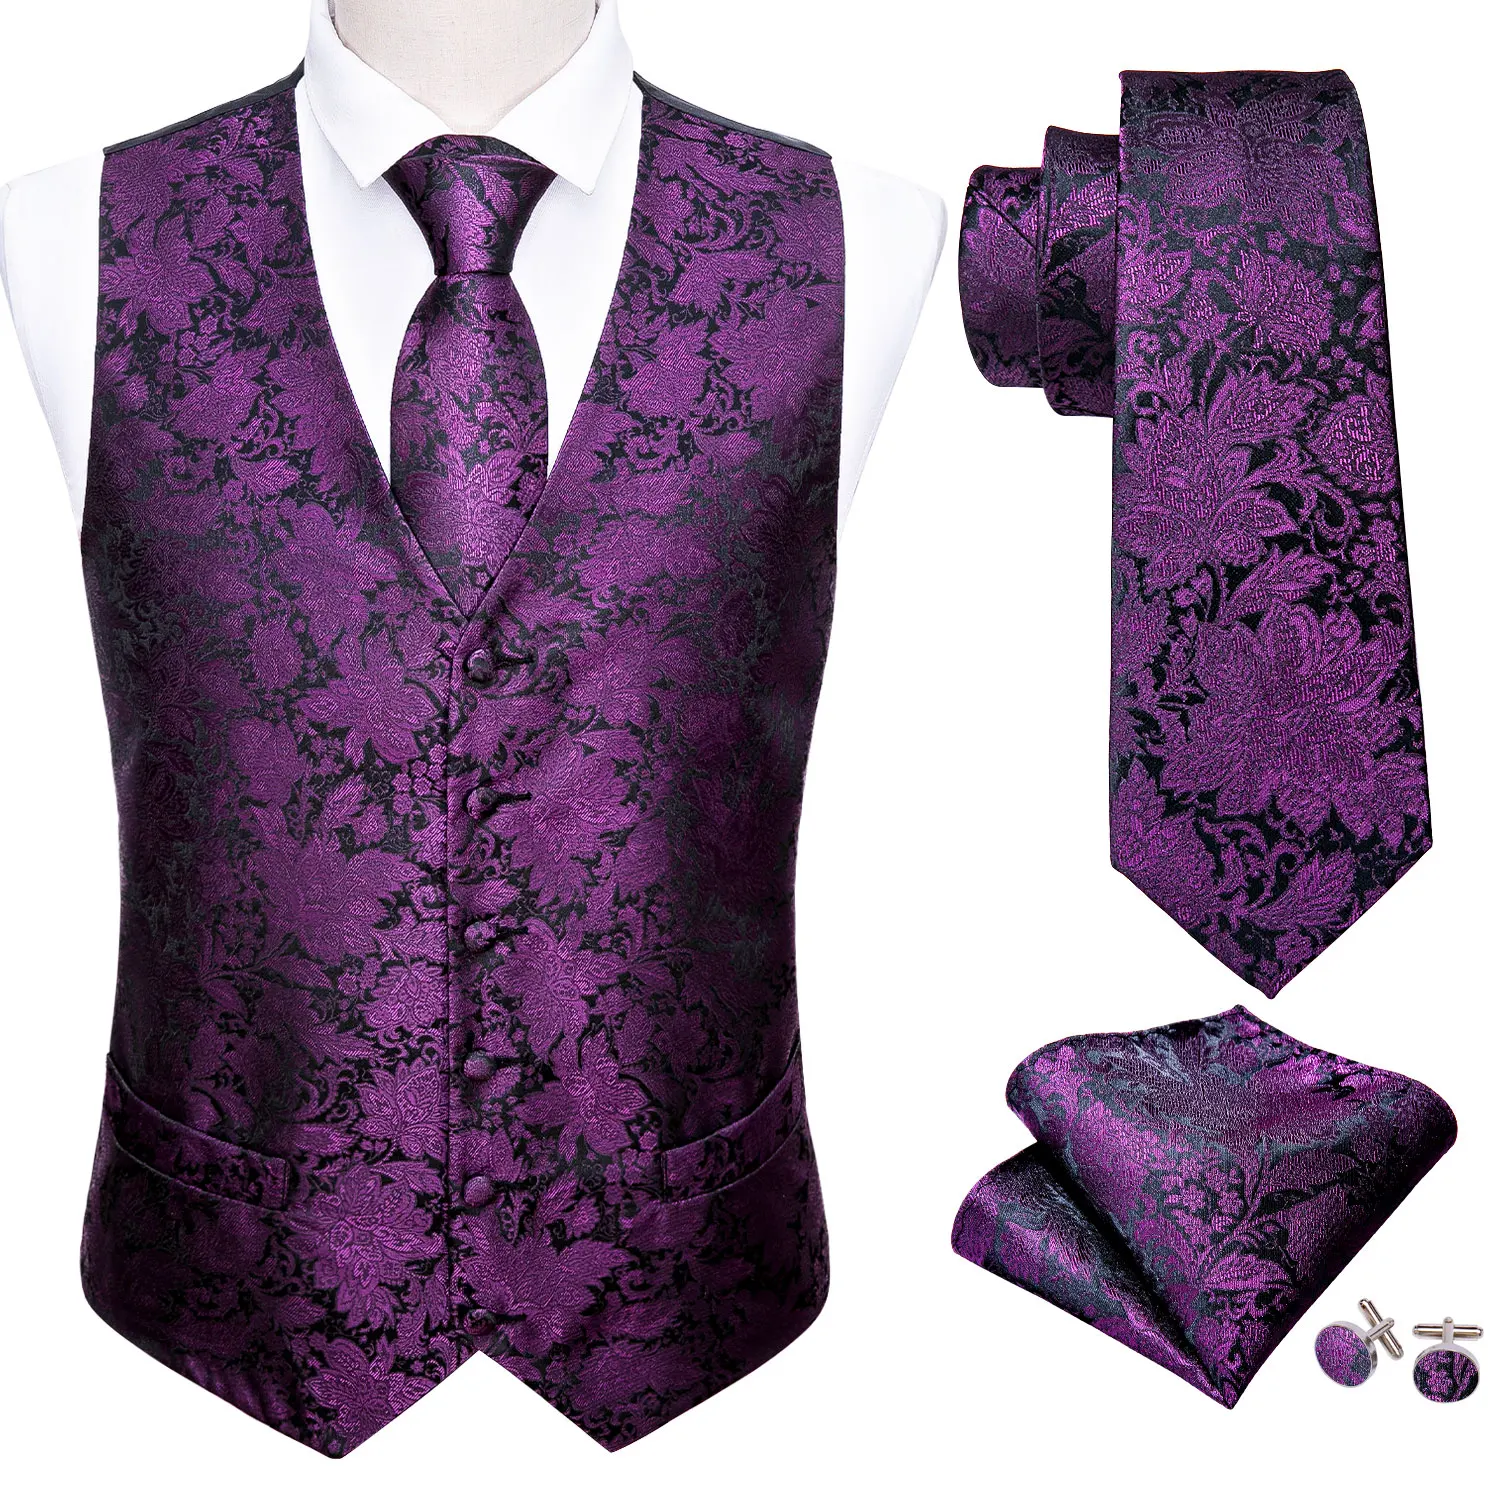 Conjunto de chaleco de lujo para hombre, traje Floral con brocado de Cachemira púrpura, conjunto de chaleco con corbata de seda, ropa de hombre, M-2038 de diseñador de moda Barry.Wang